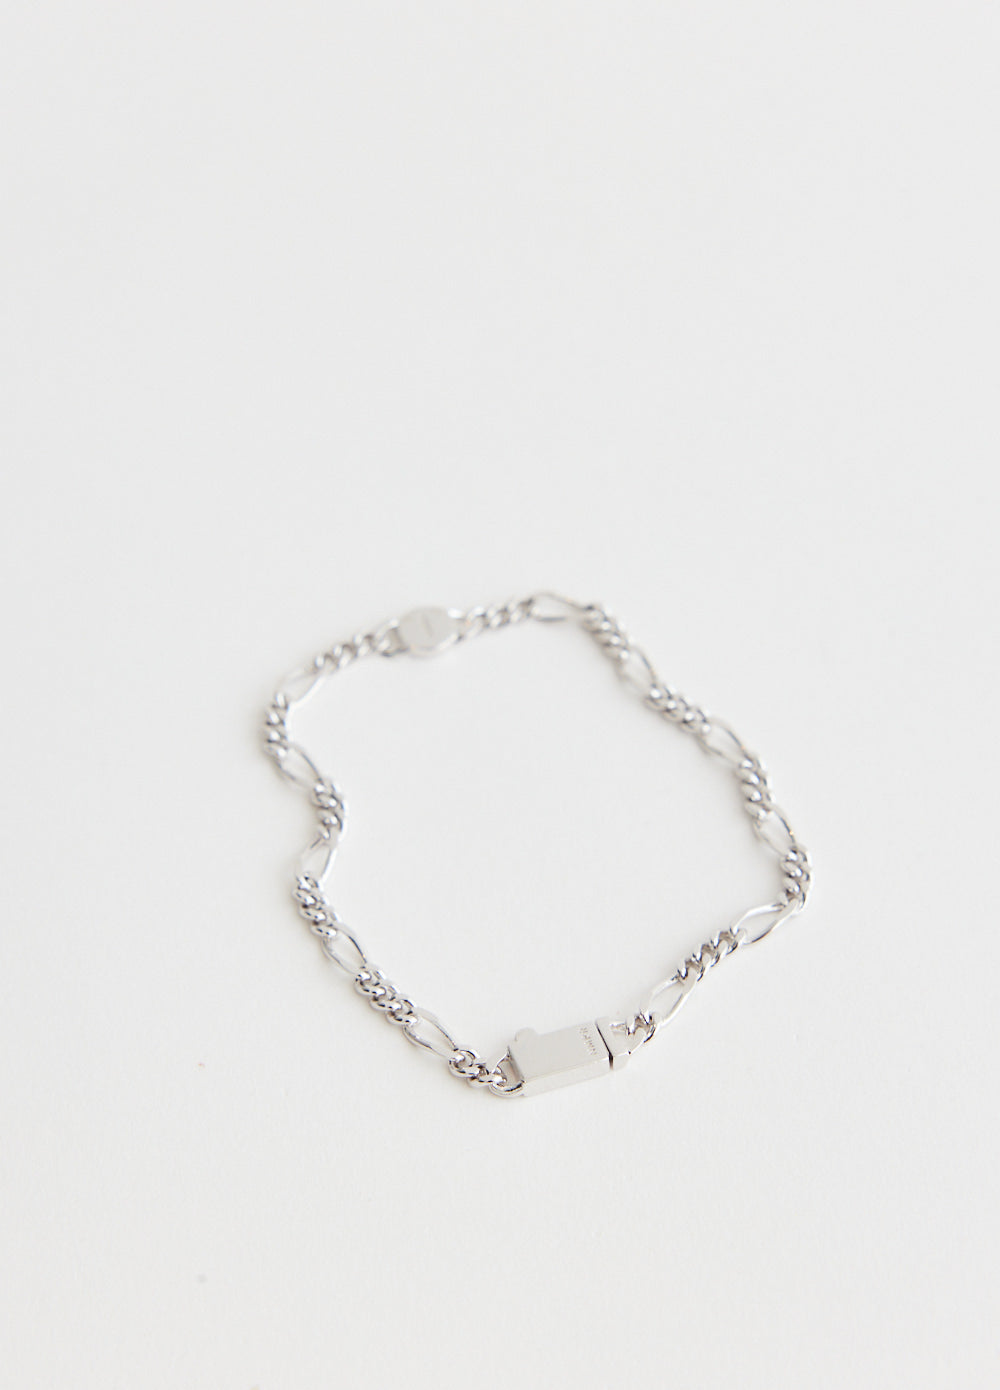 Side Pendant Figaro Chain Bracelet